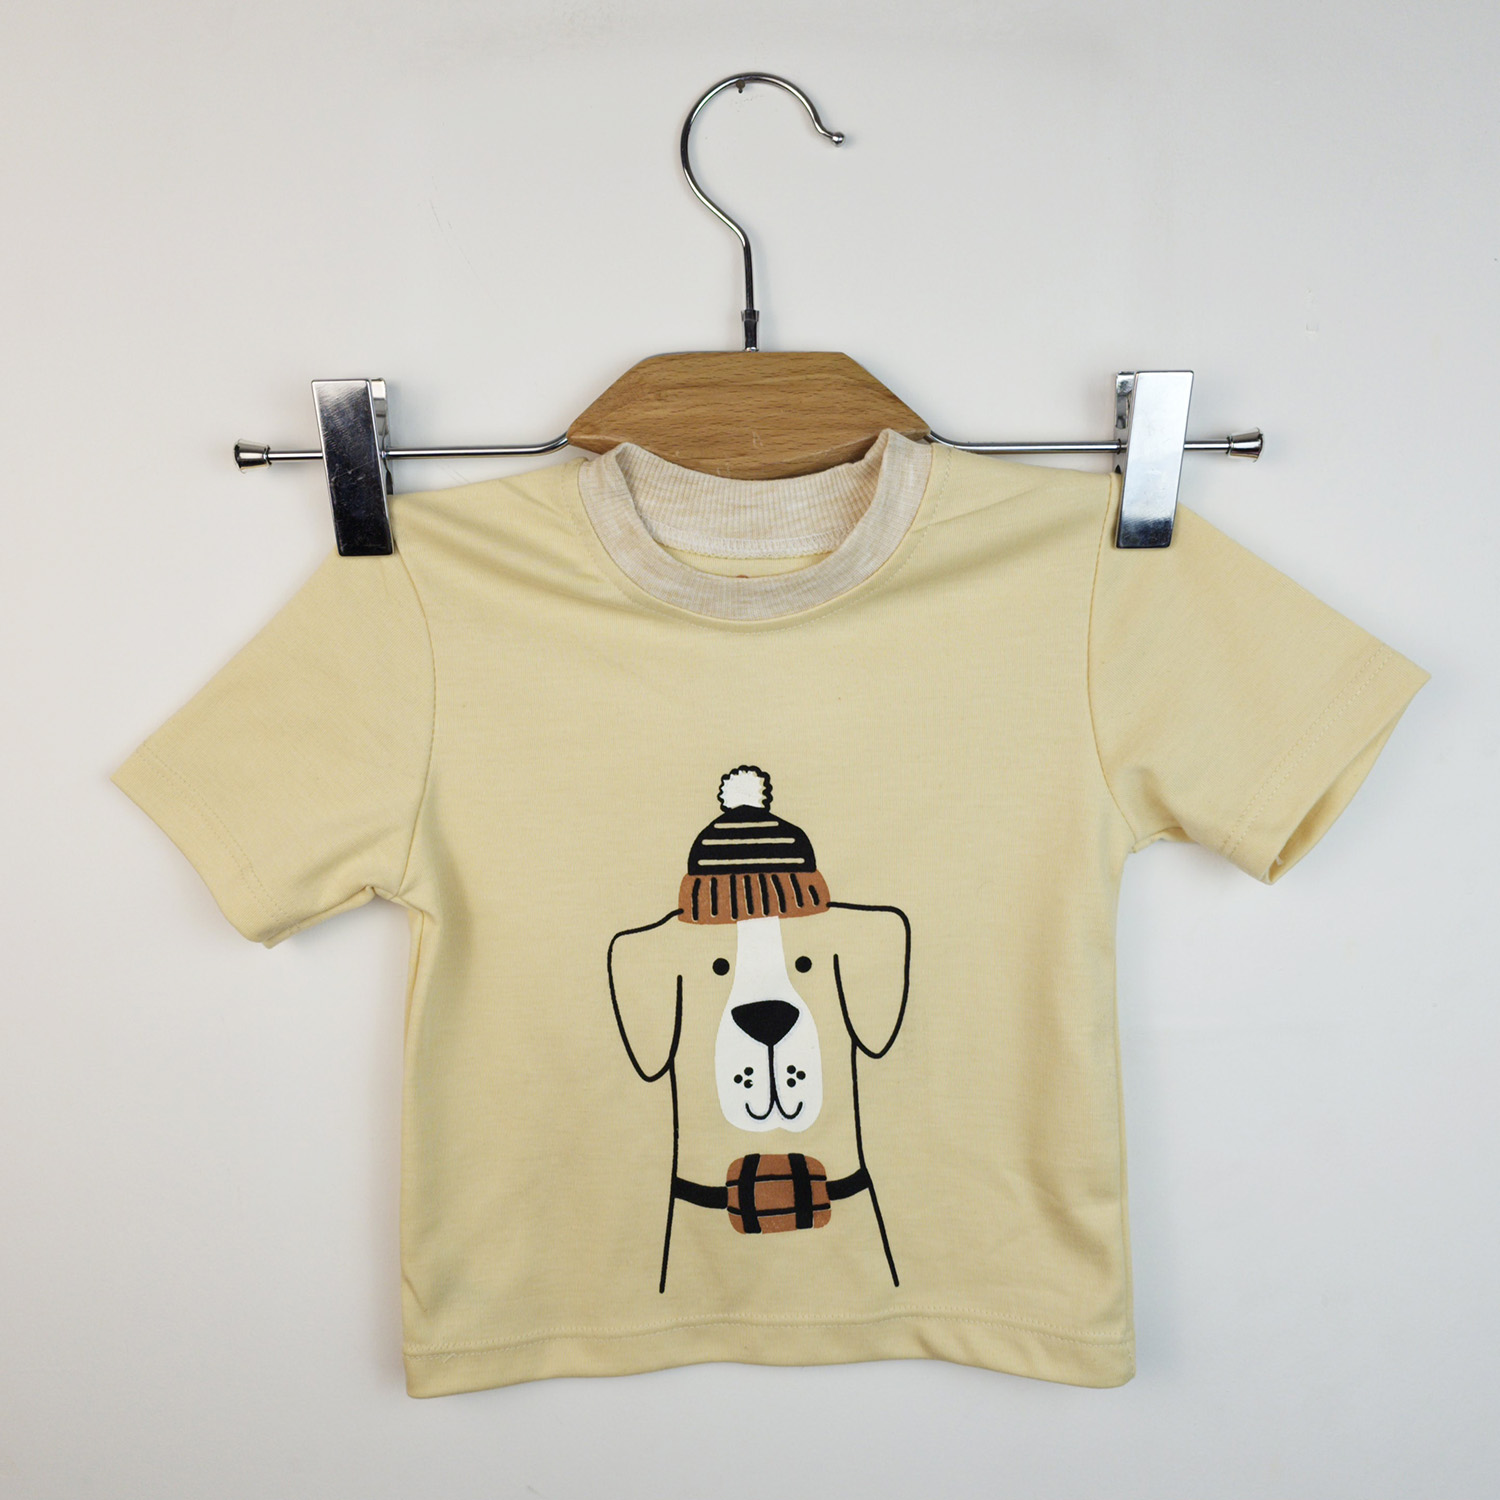 ست تی شرت آستین کوتاه و شلوارک بچگانه سپیدپوش مدل سگ کد 140240 -  - 6